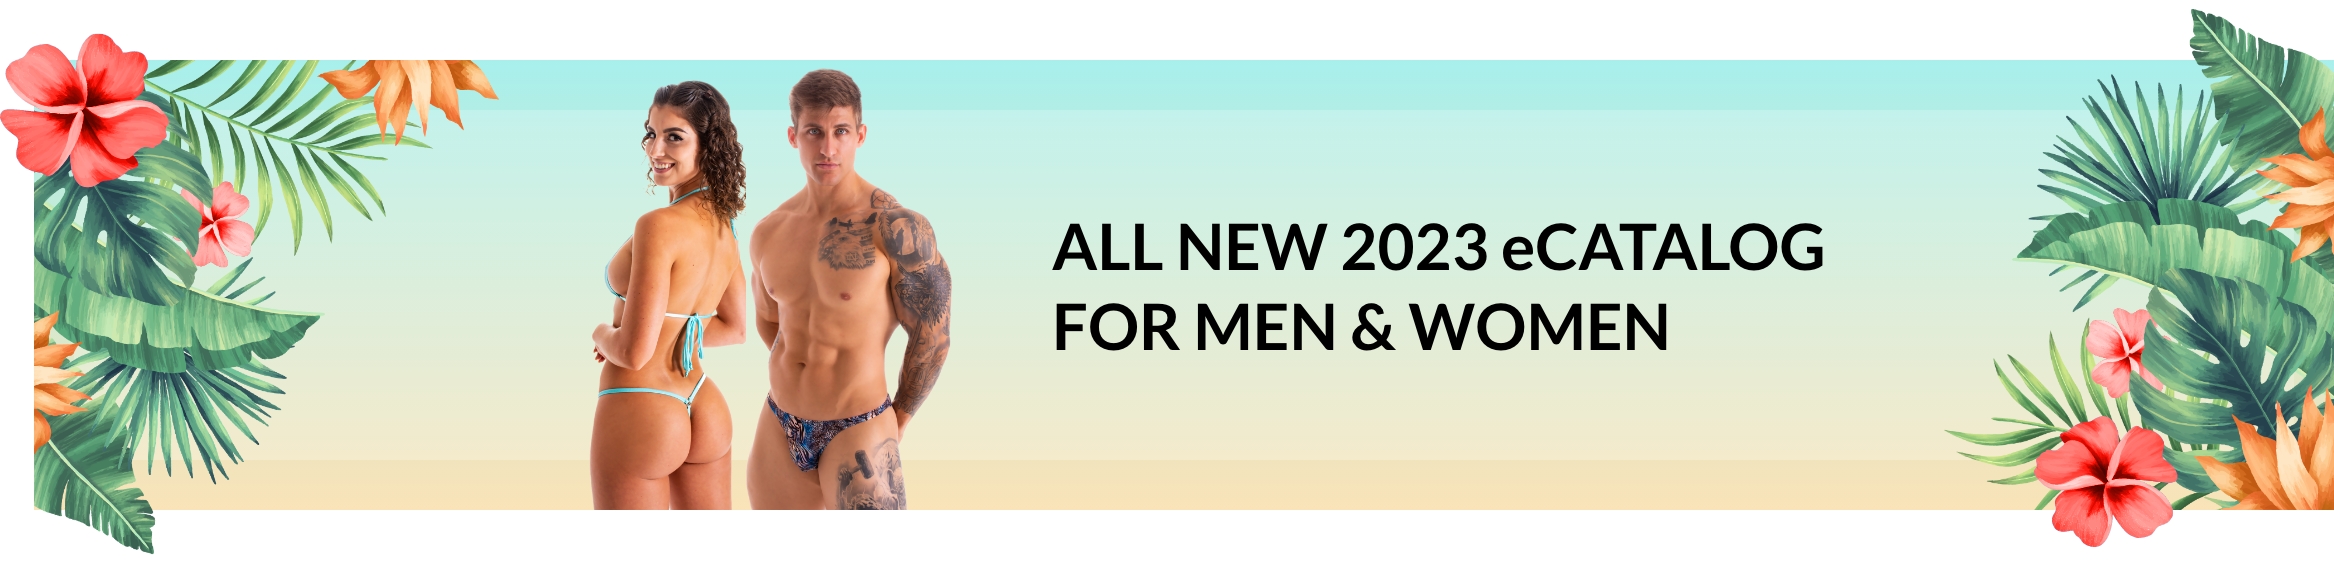 Skinz 2023 Men & Women Catalog Banner